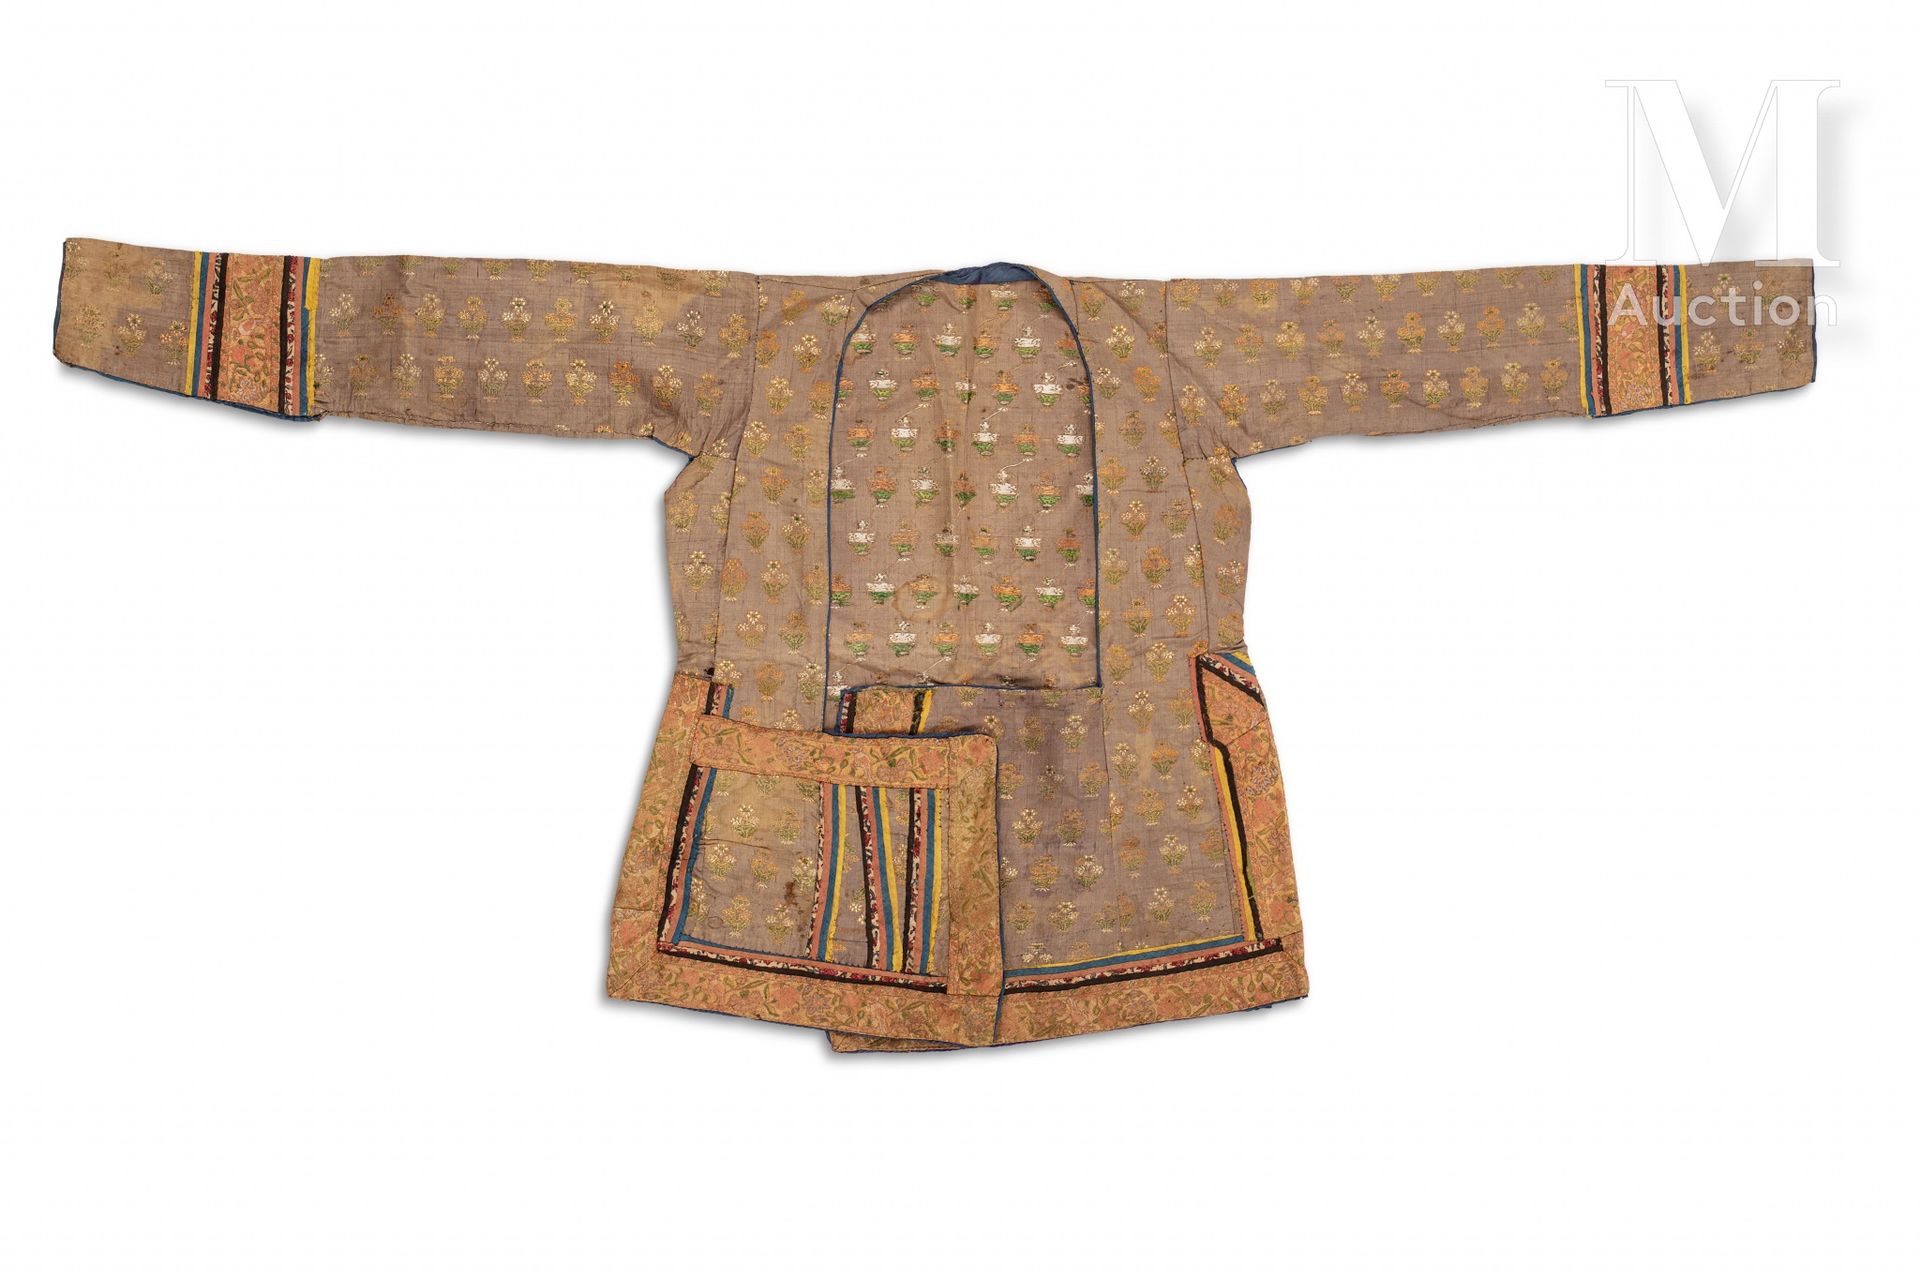 Veste safavide Iran, 18. Jahrhundert

Tailliertes Kleidungsstück mit Dreiviertel&hellip;